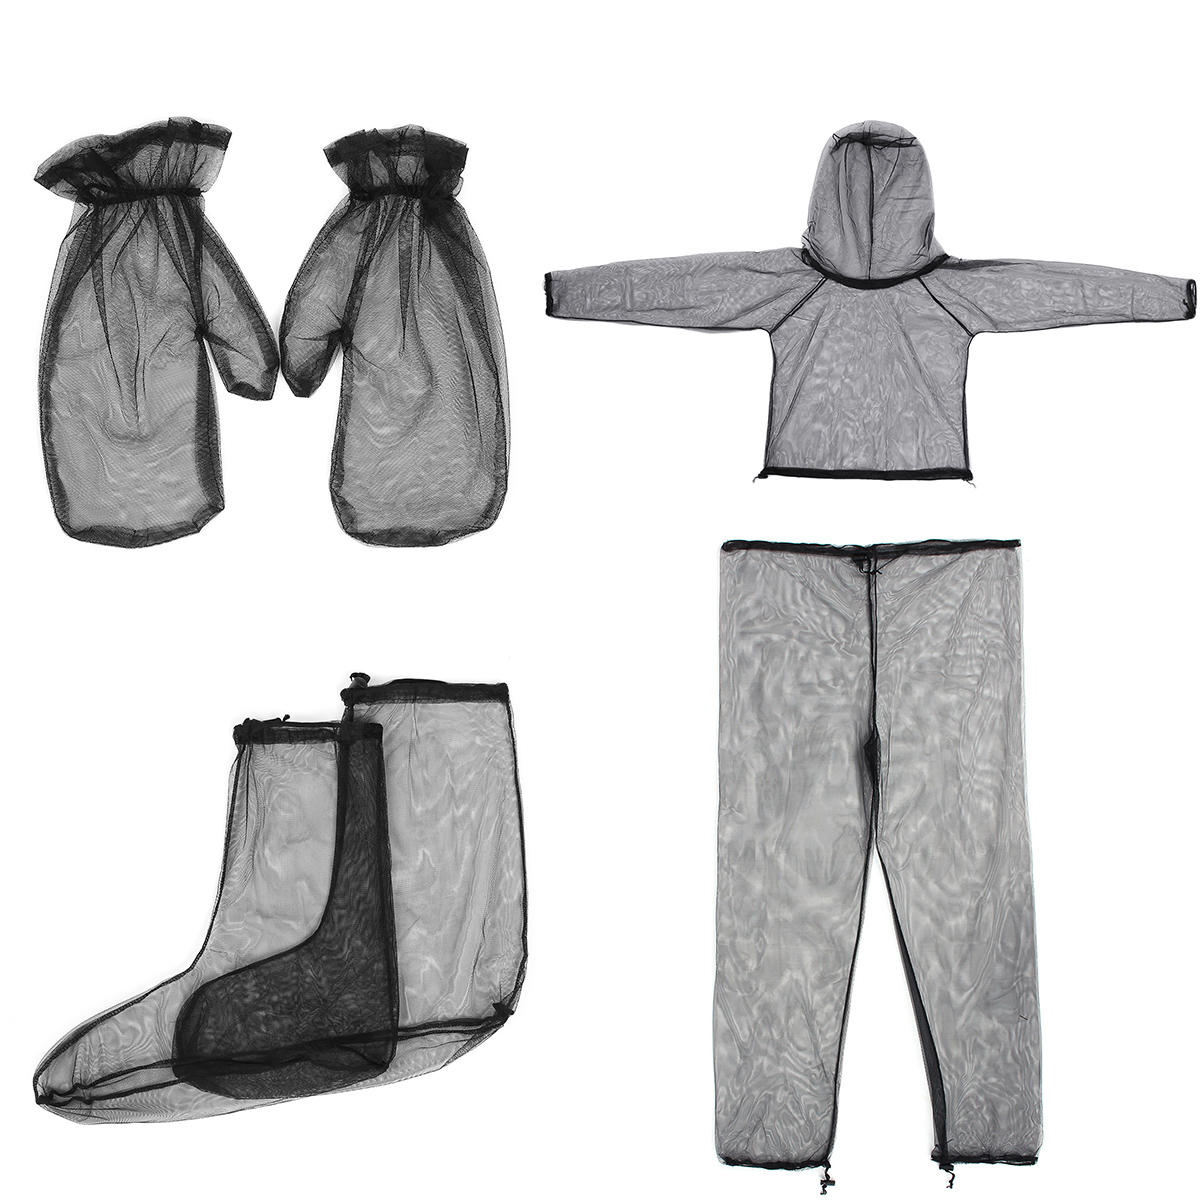 高密度メッシュ素材の蚊除けスーツ、軽量で、ジャケット、パンツ、手袋、足袋の4点セットでアウトドア旅行やキャンプに最適。